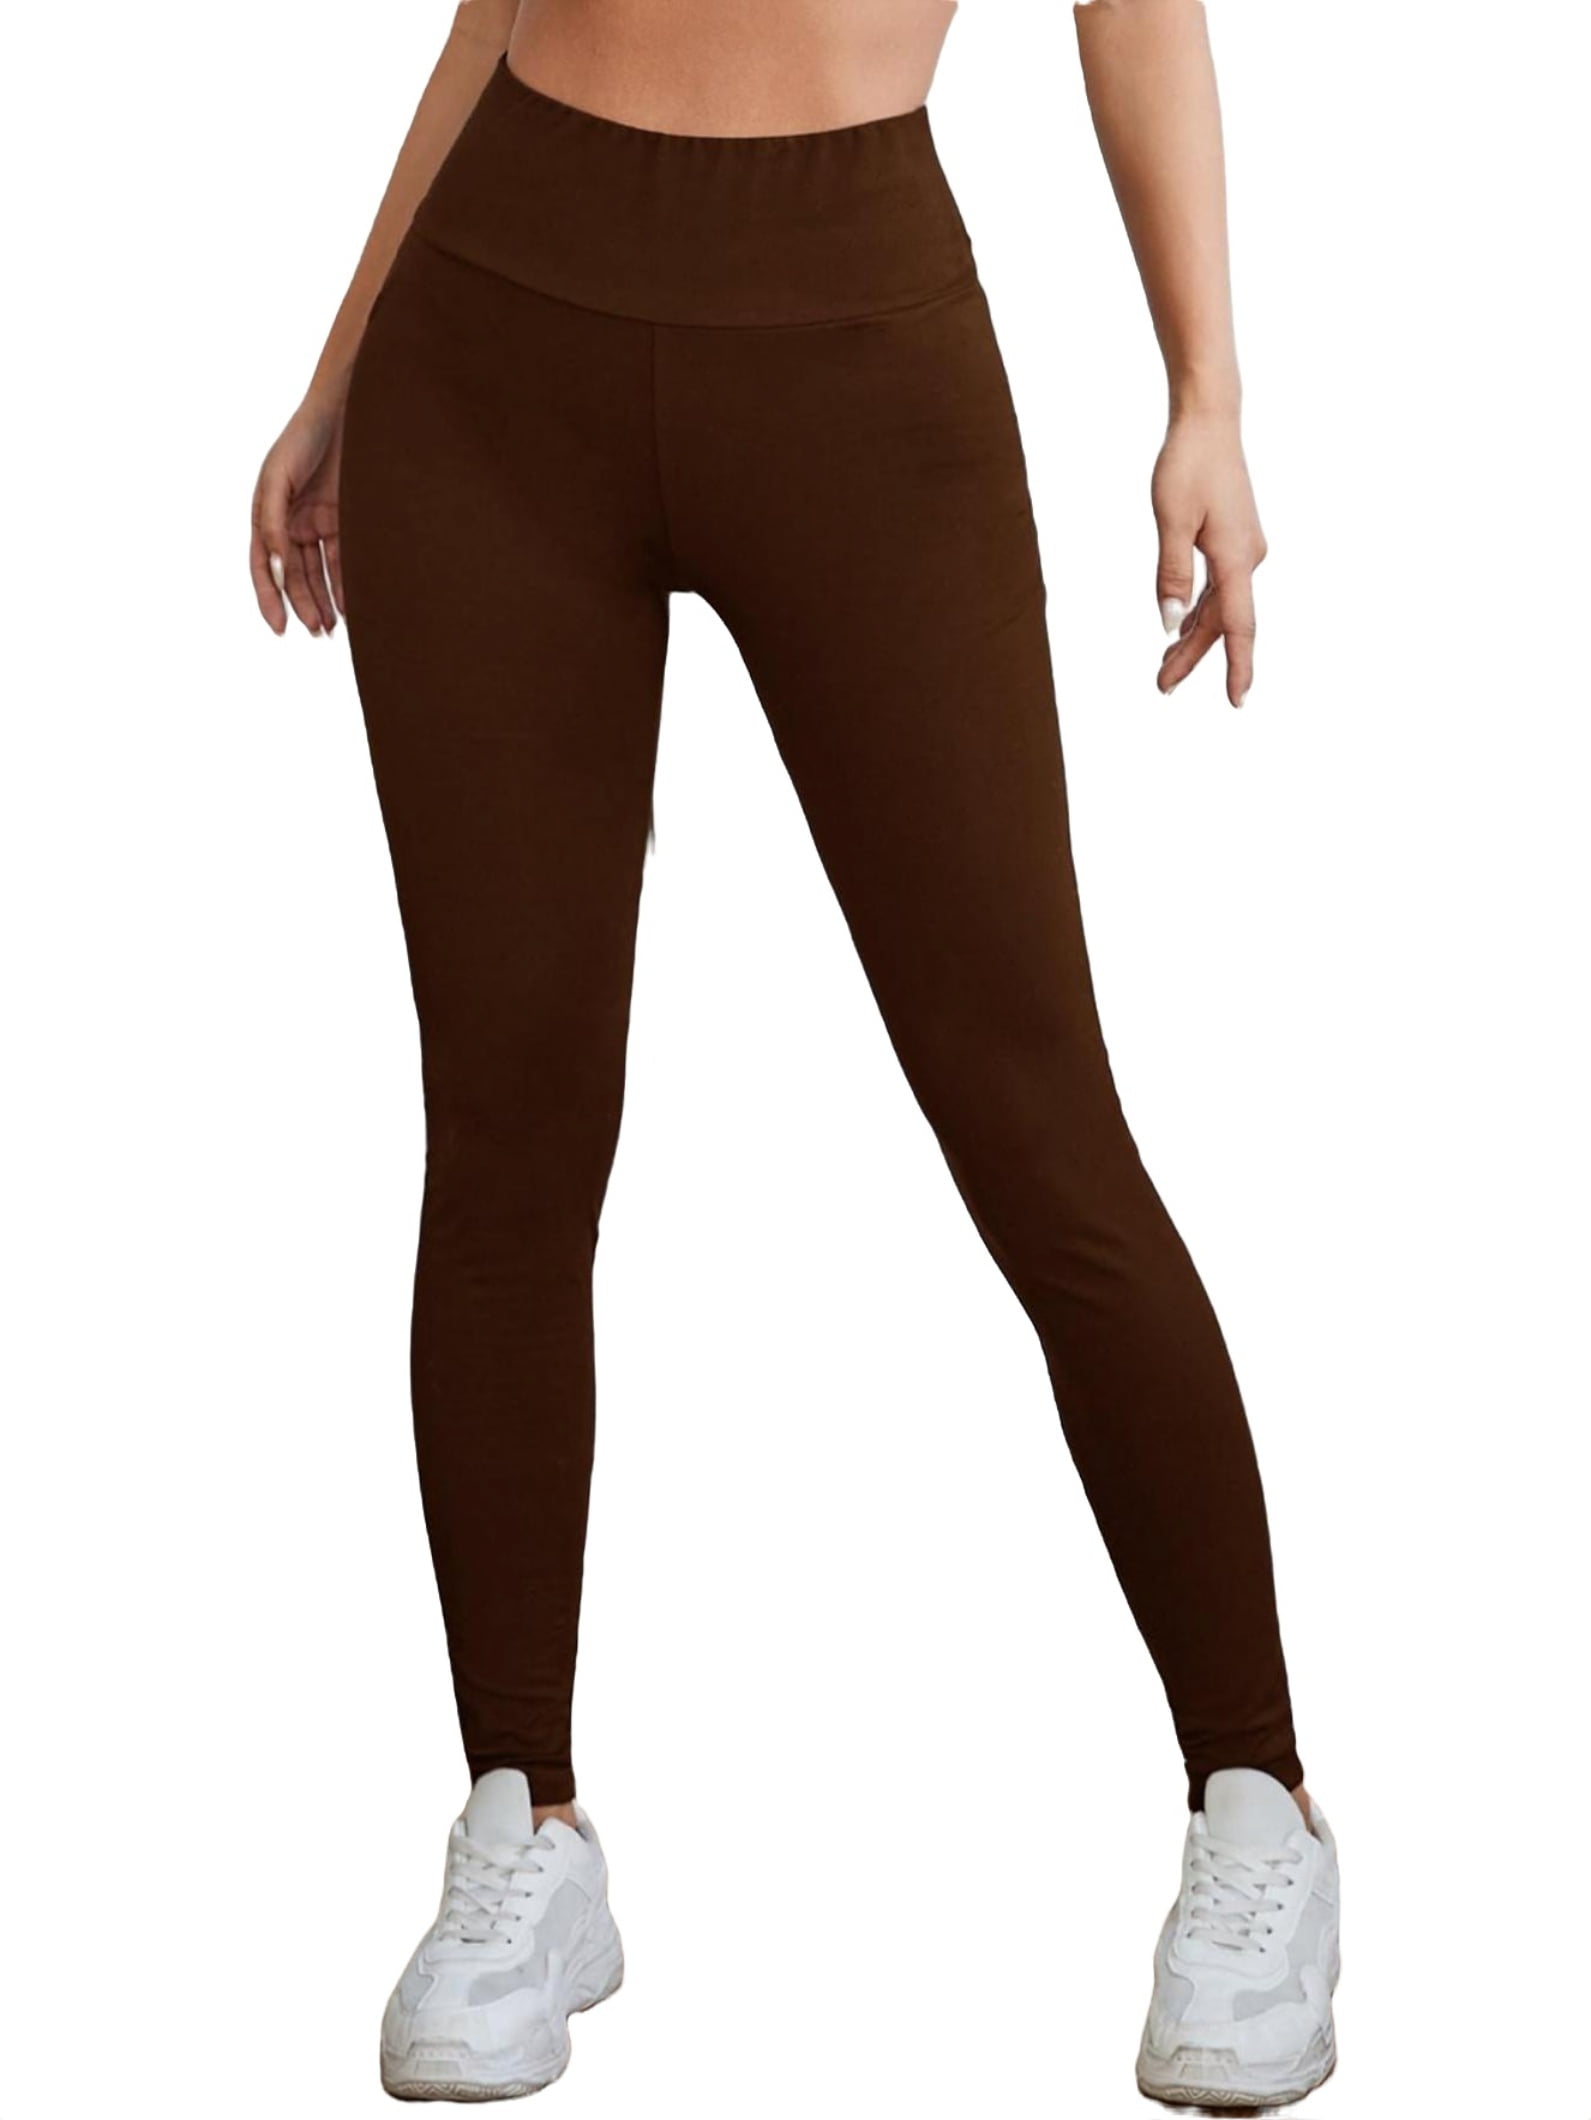 Women's Casual Plain Regular Chocolate Brown Leggings XS 